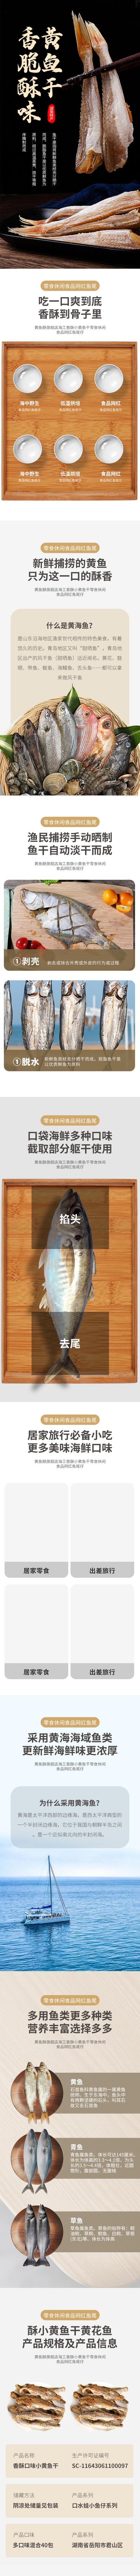 南门网 广告 海报 电视 详情页 专题 长途 鱼 小黄鱼 干鱼 零食 餐饮 美食